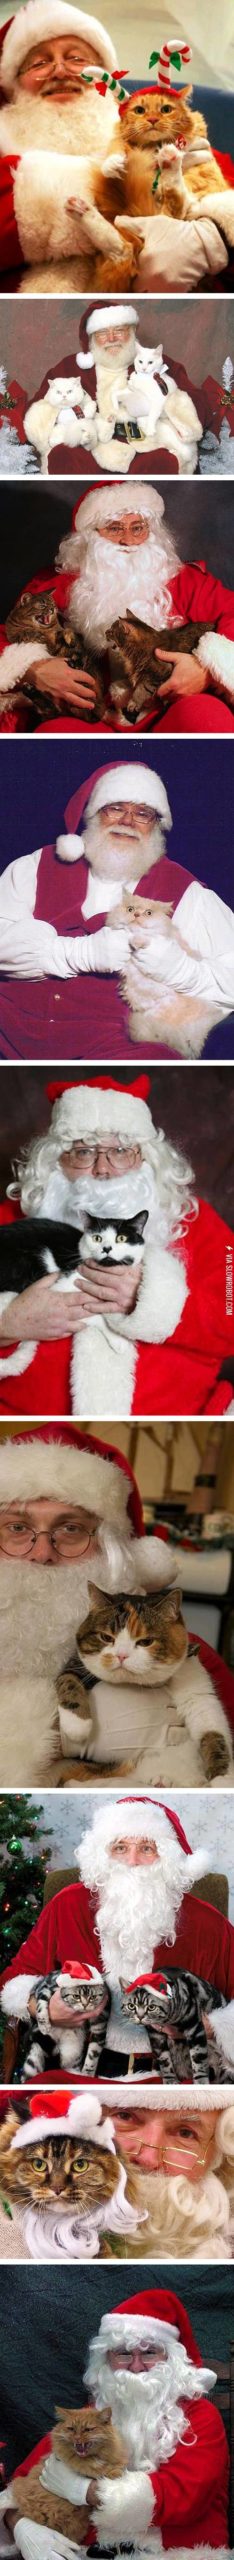 Cat+and+Santa.